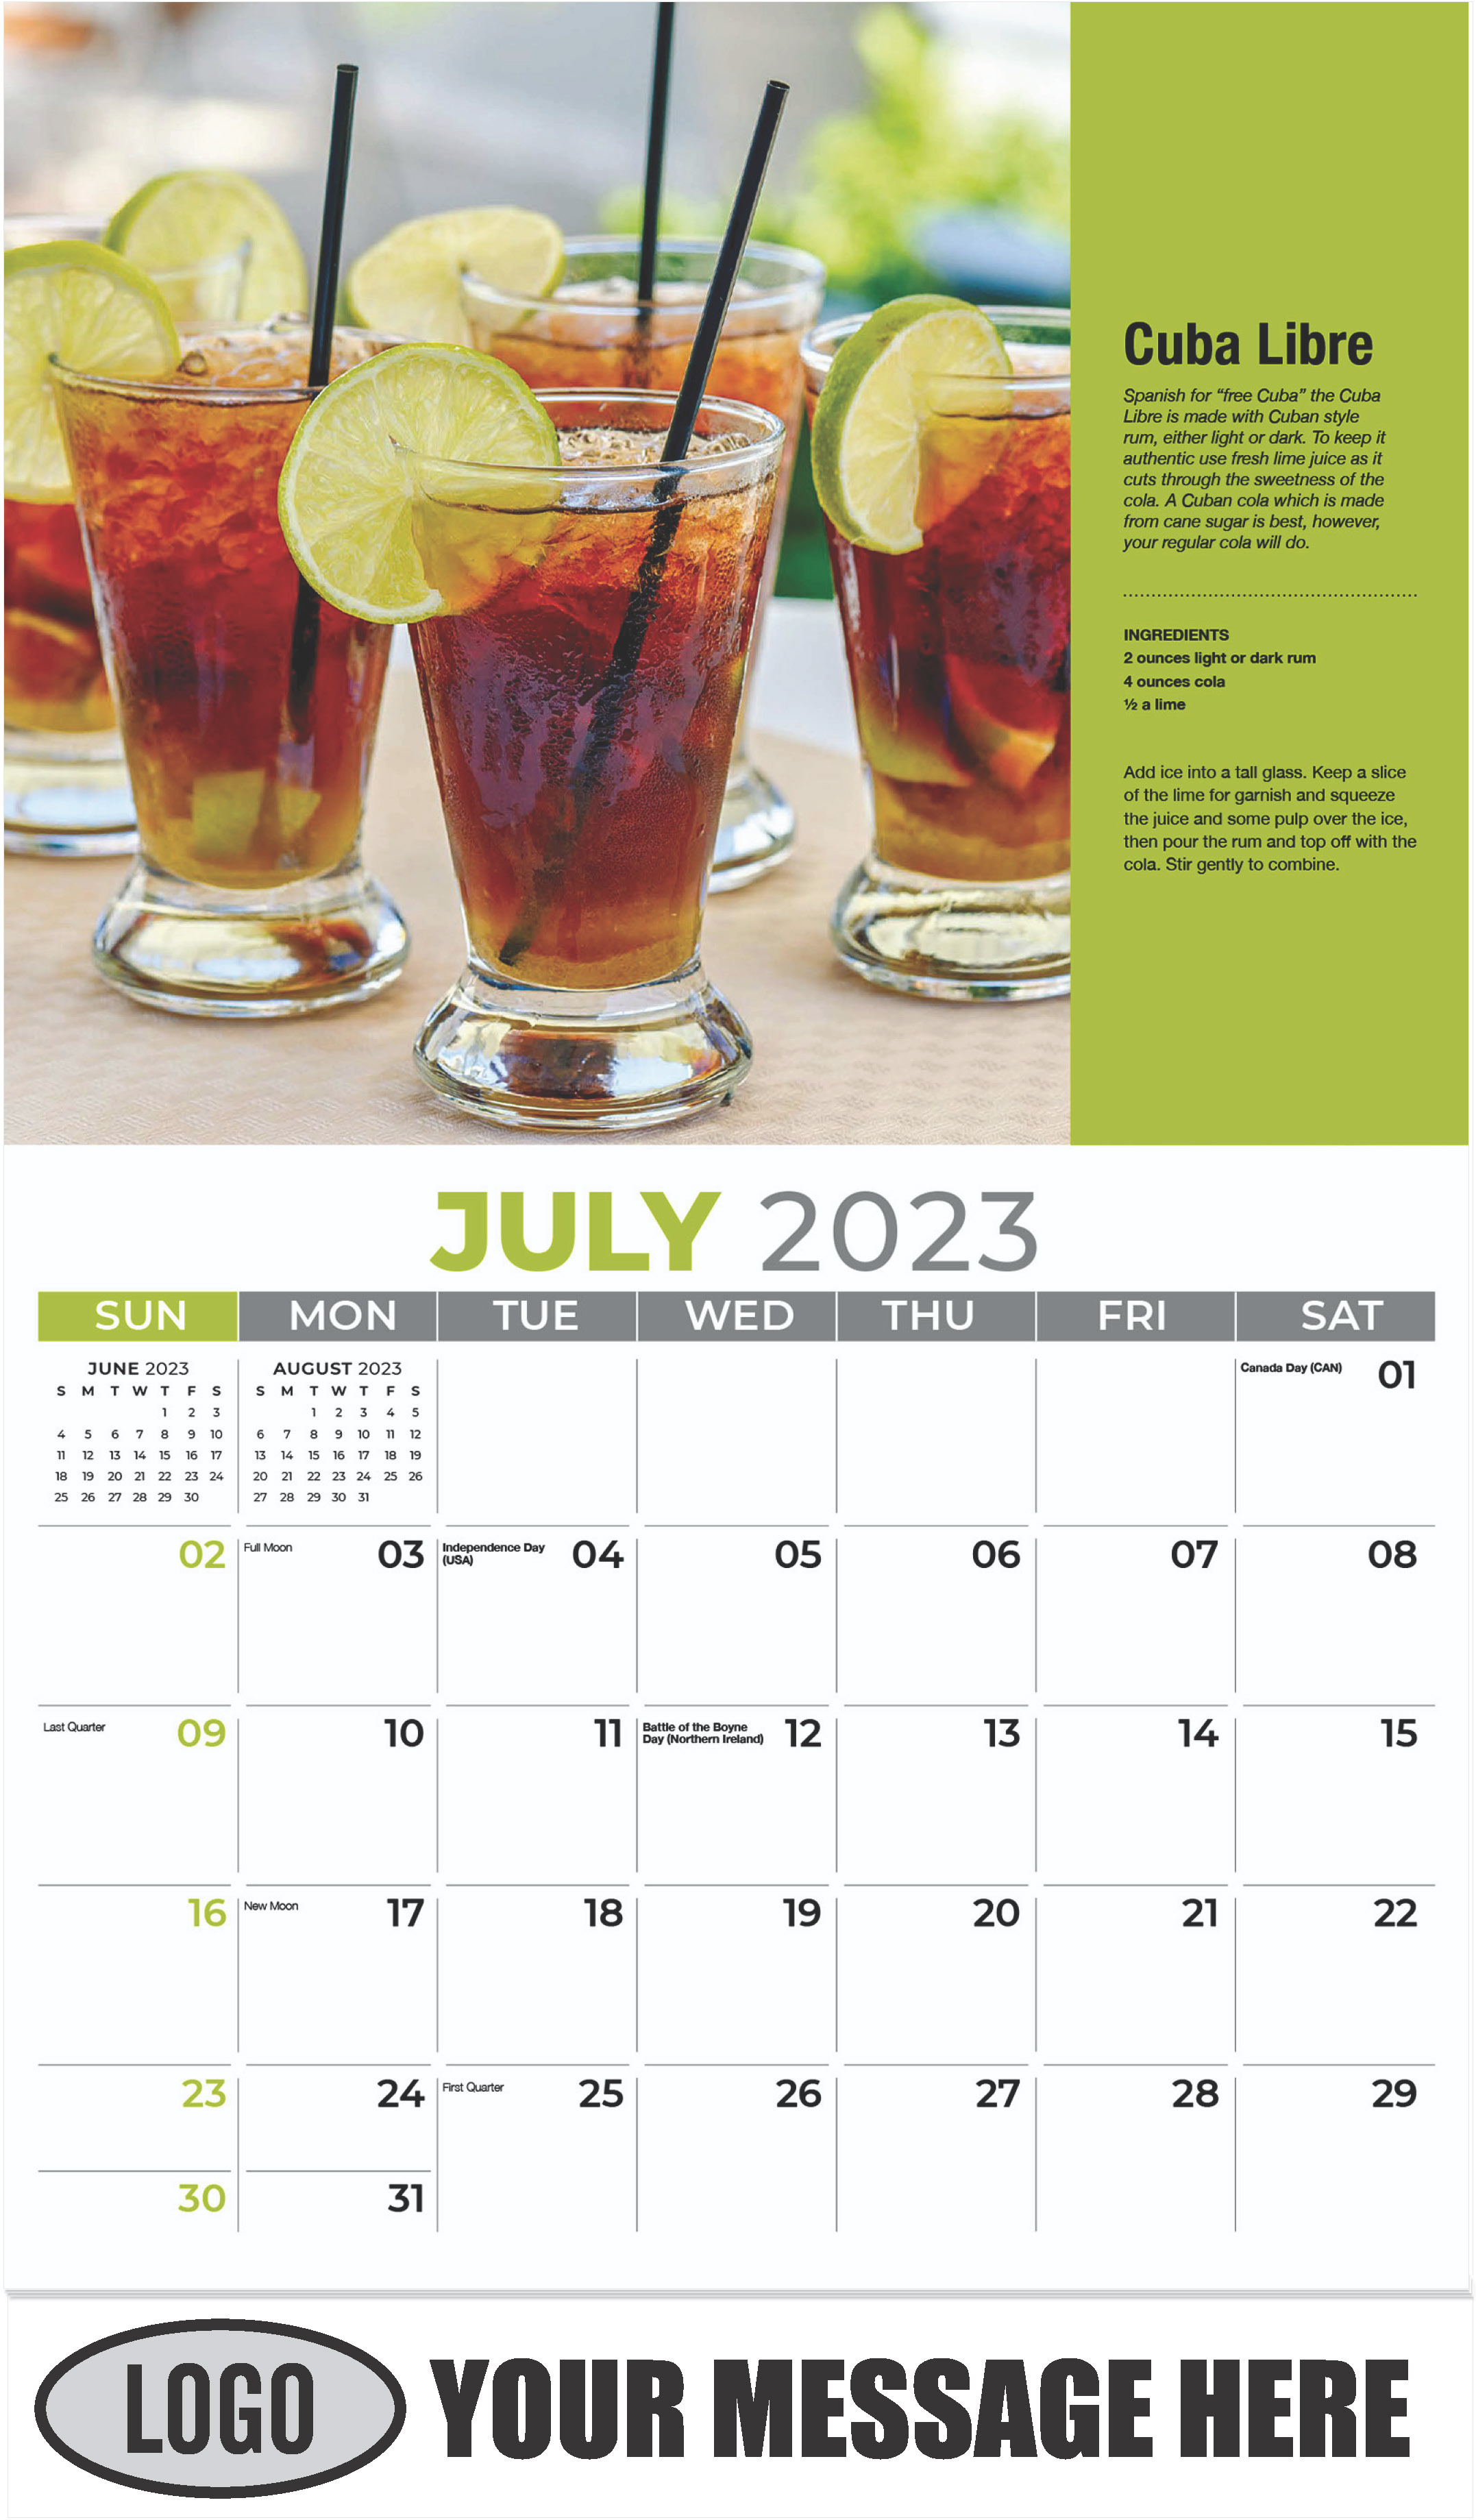 Cuba Libre - July - Happy Hour Cocktails 2023 Promotional Calendar